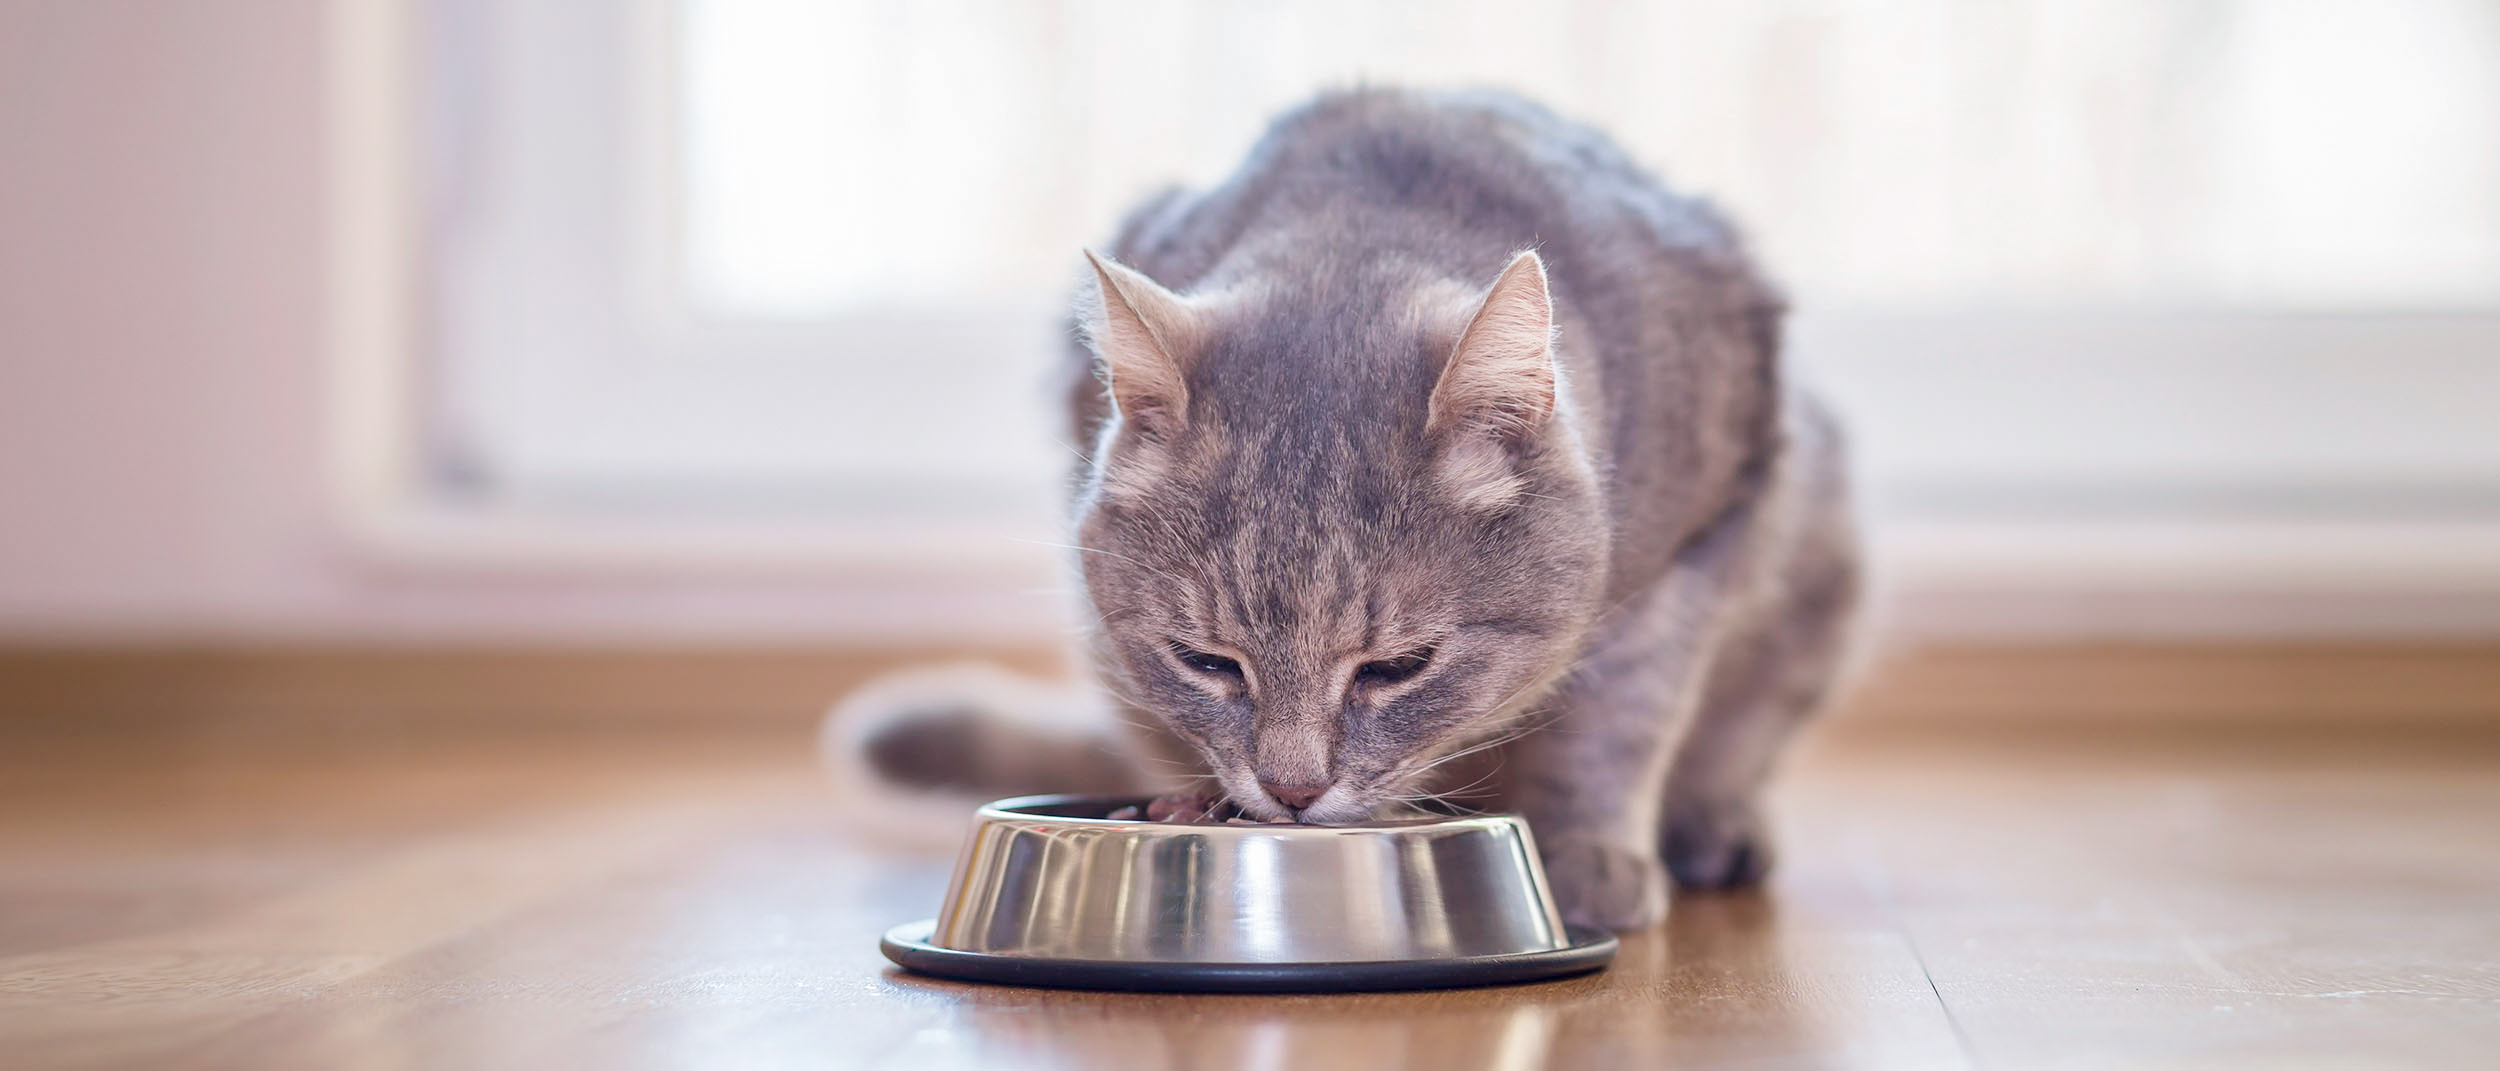 Gatto adulto seduto in casa che mangia da una ciotola argento.